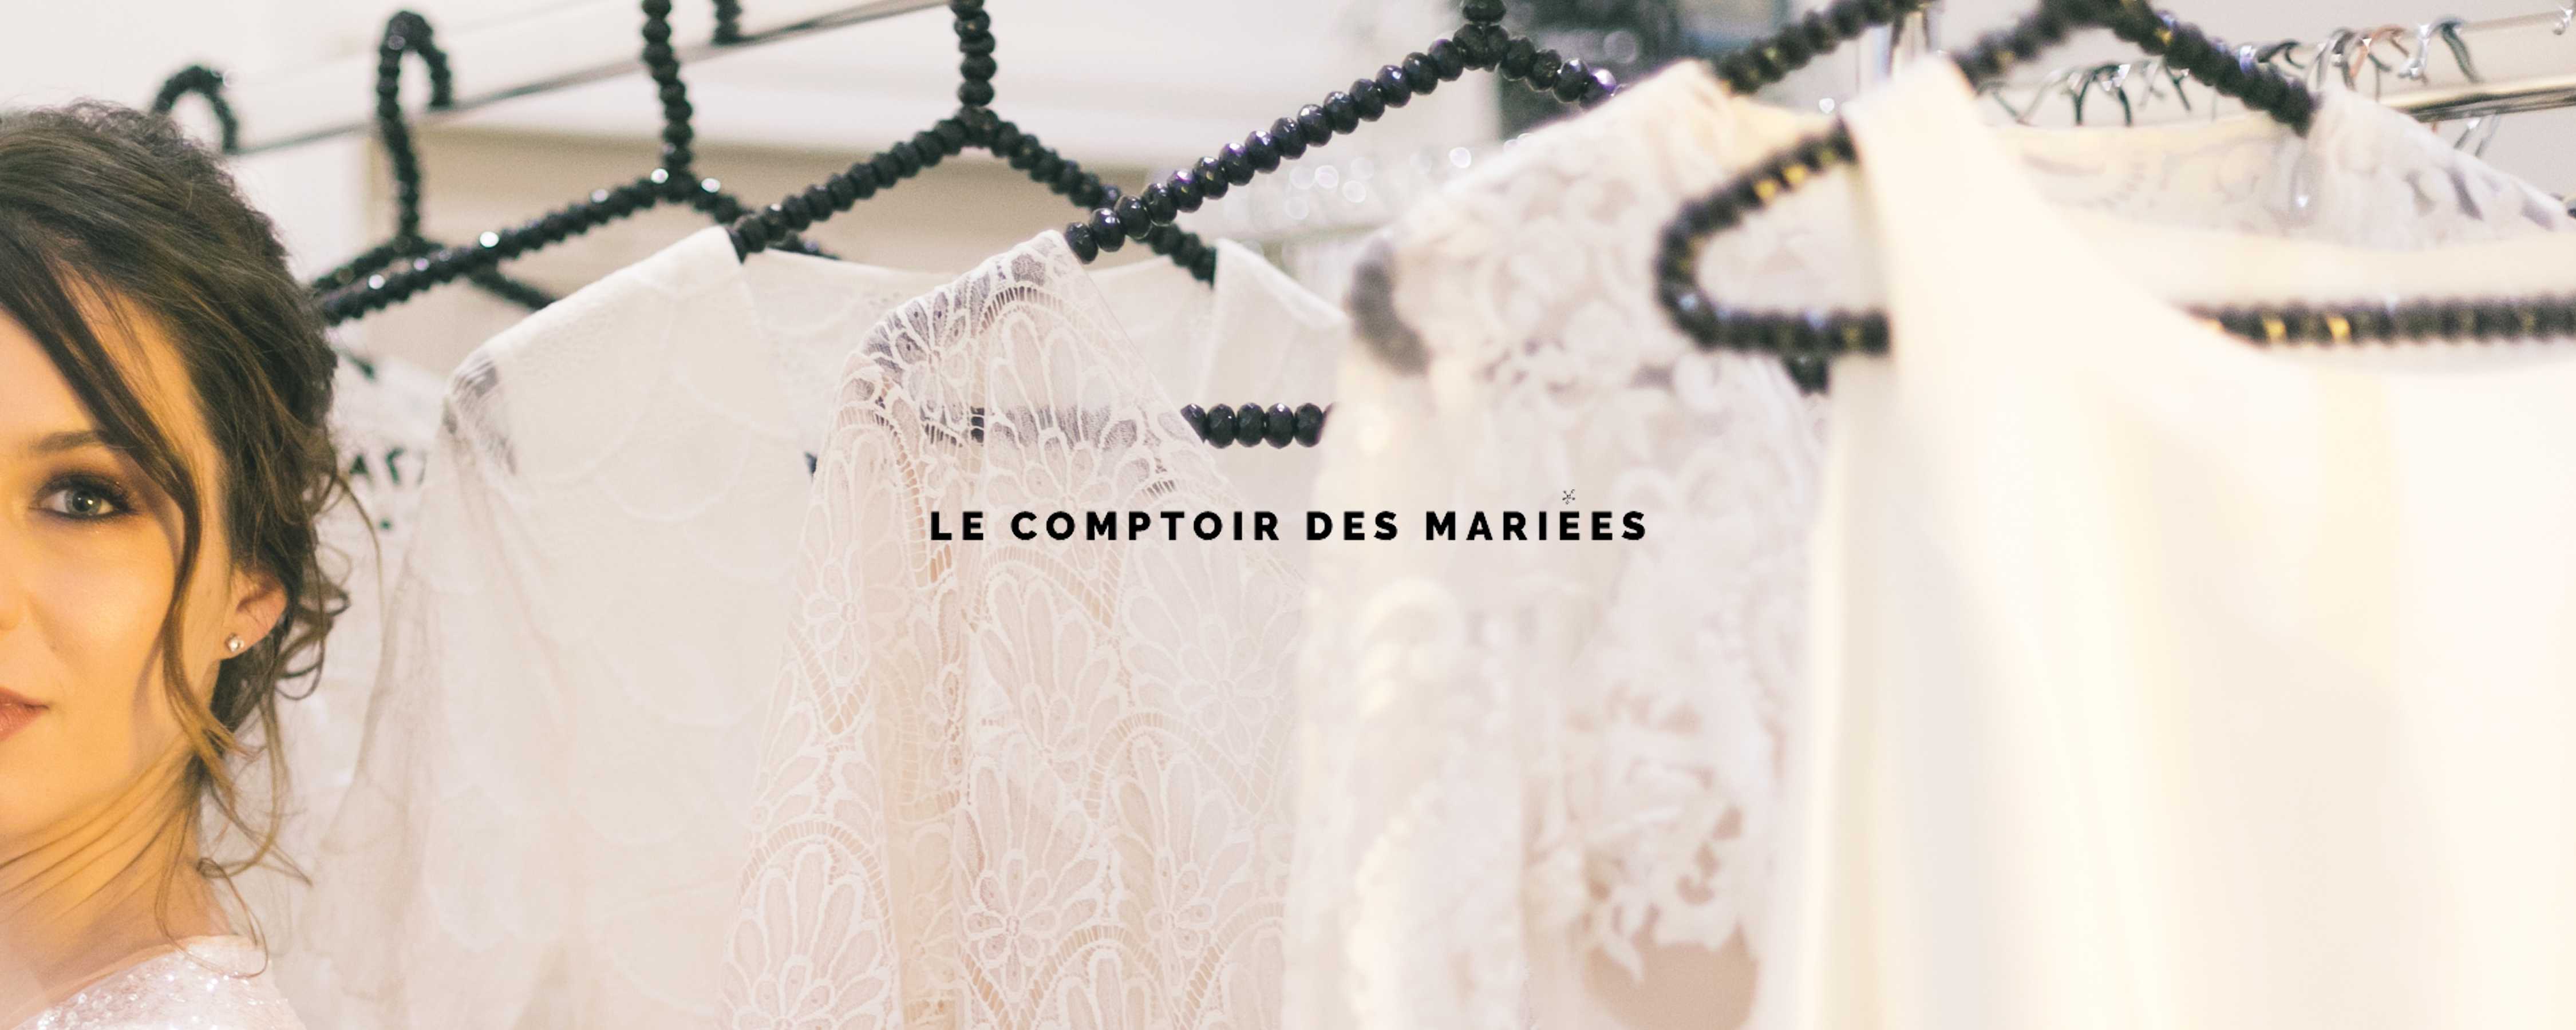 « Gisèle & Simone » au « Comptoir des Mariées », 12 Dec 2019